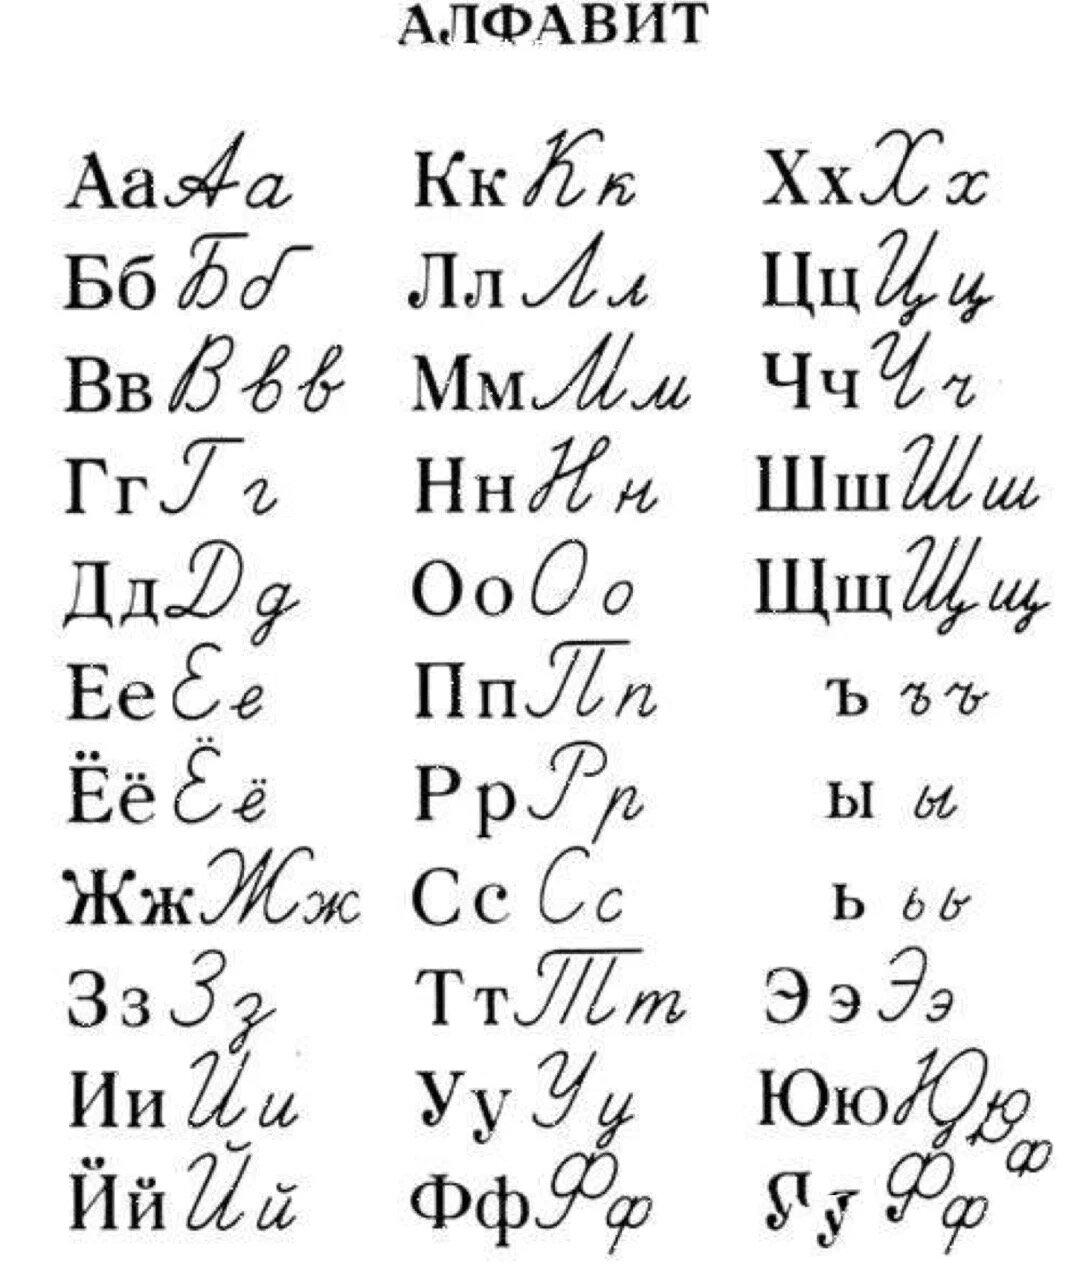 俄语手写体,俄语字母发音,对应的汉语拼音